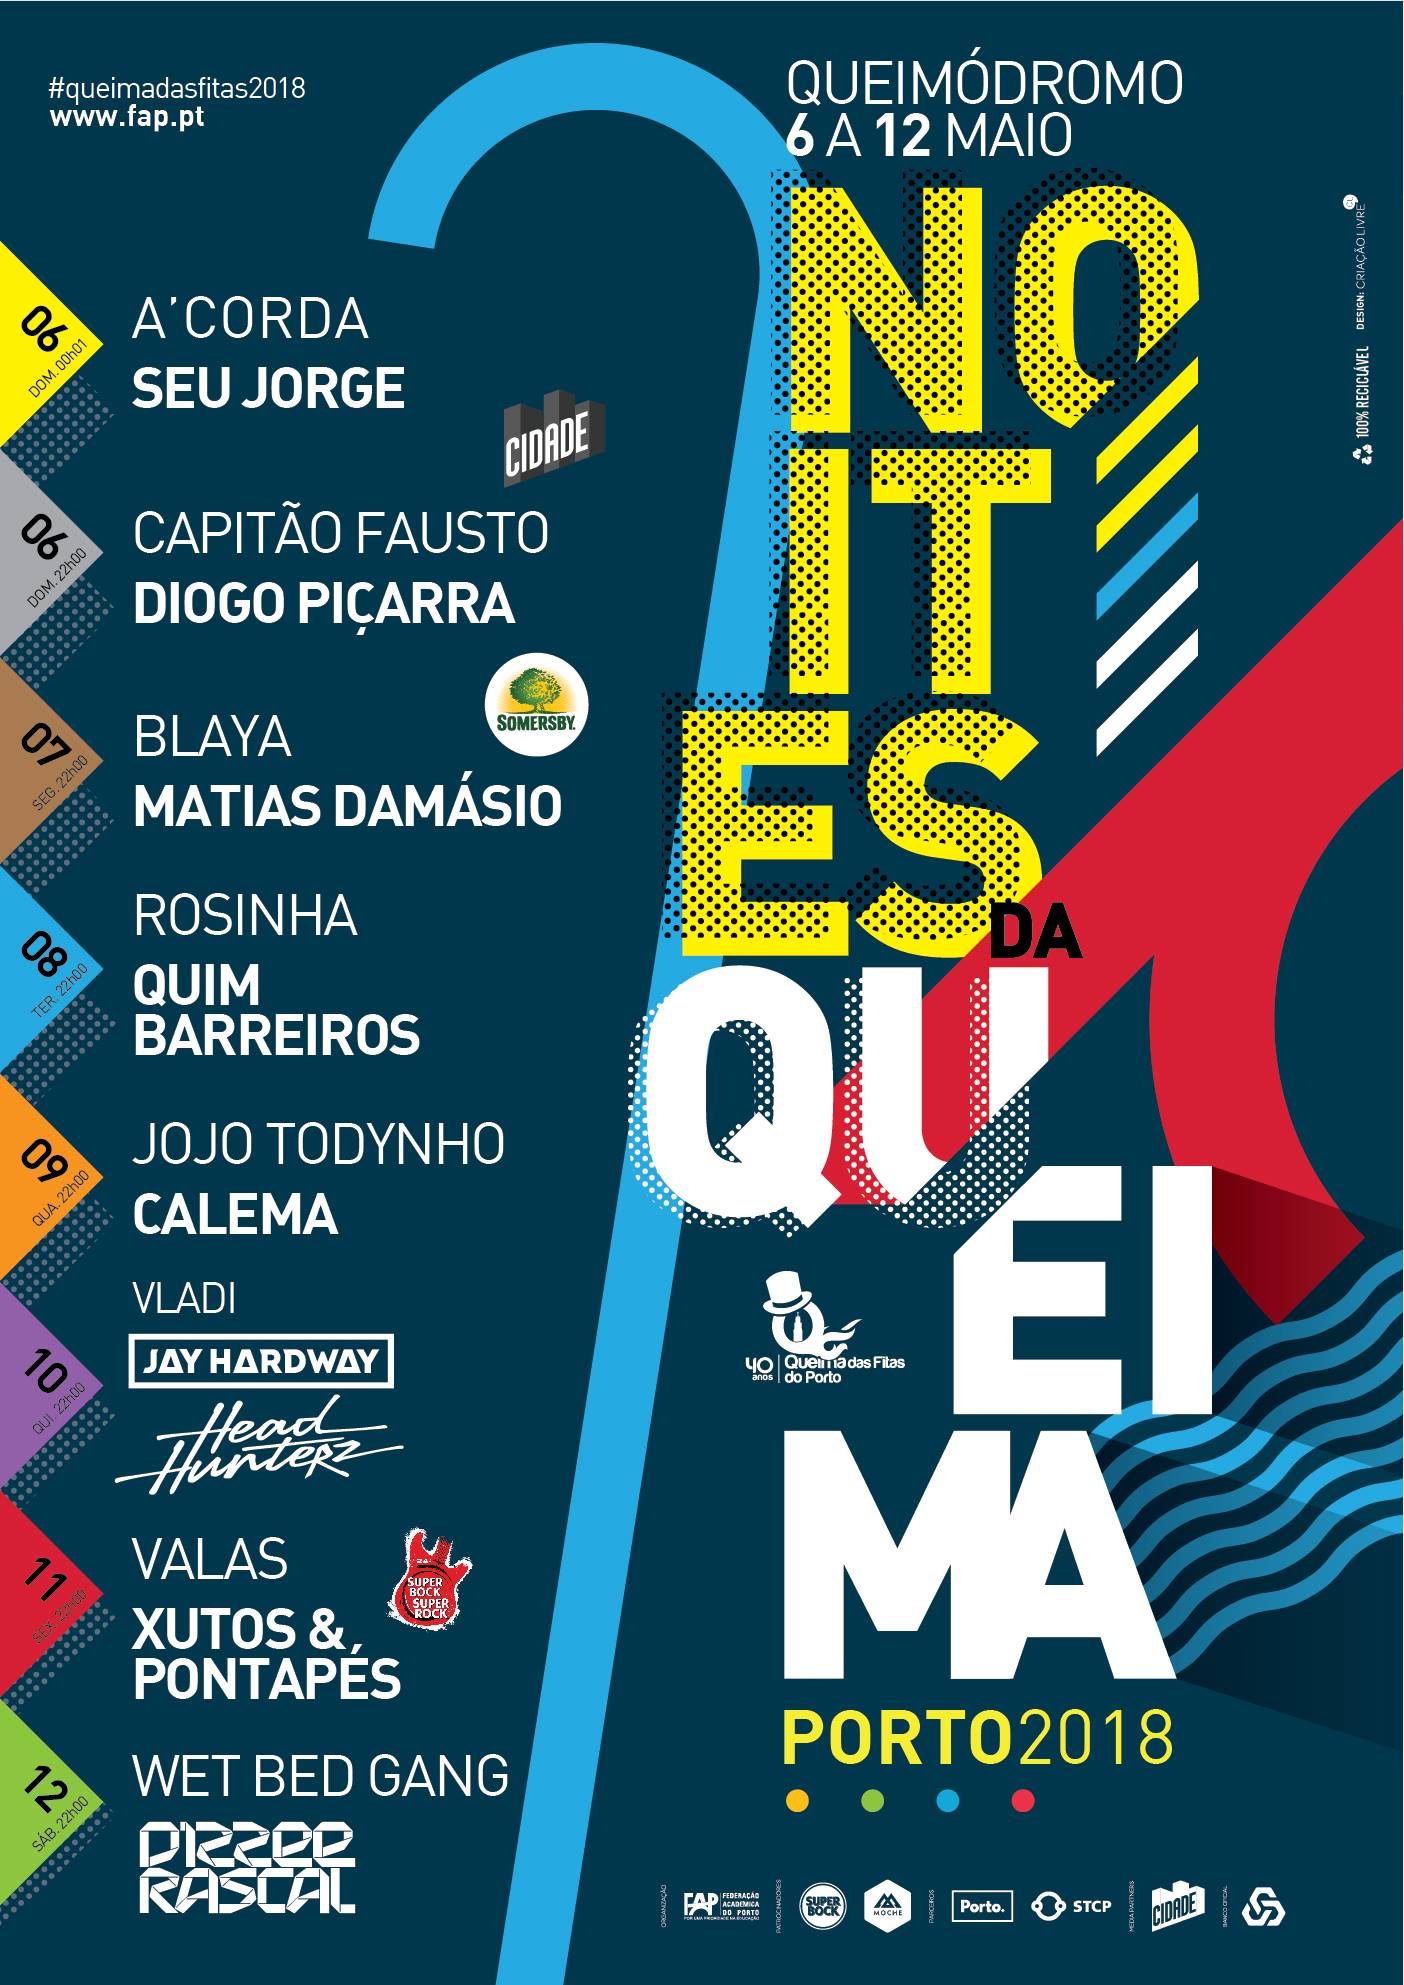 "Seu Jorge", "Capitão Fausto" e "Matias Damásio" são alguns dos destaques do cartaz deste ano. 